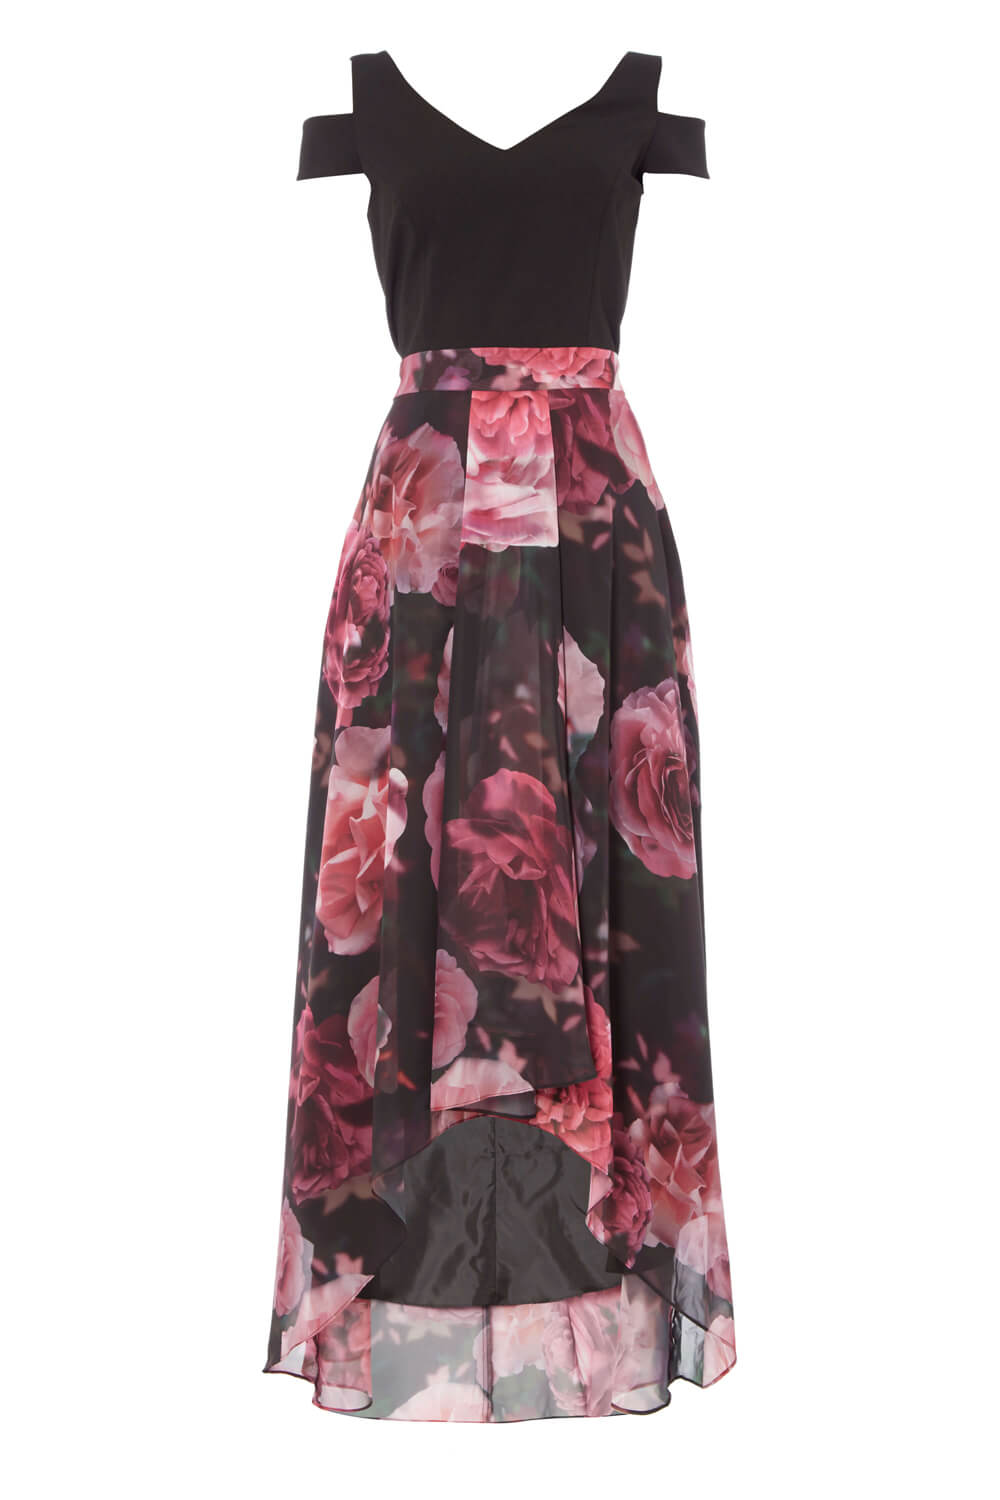 Rose Floral Print Cold Shoulder Maxi Dress, Image 6 of 6